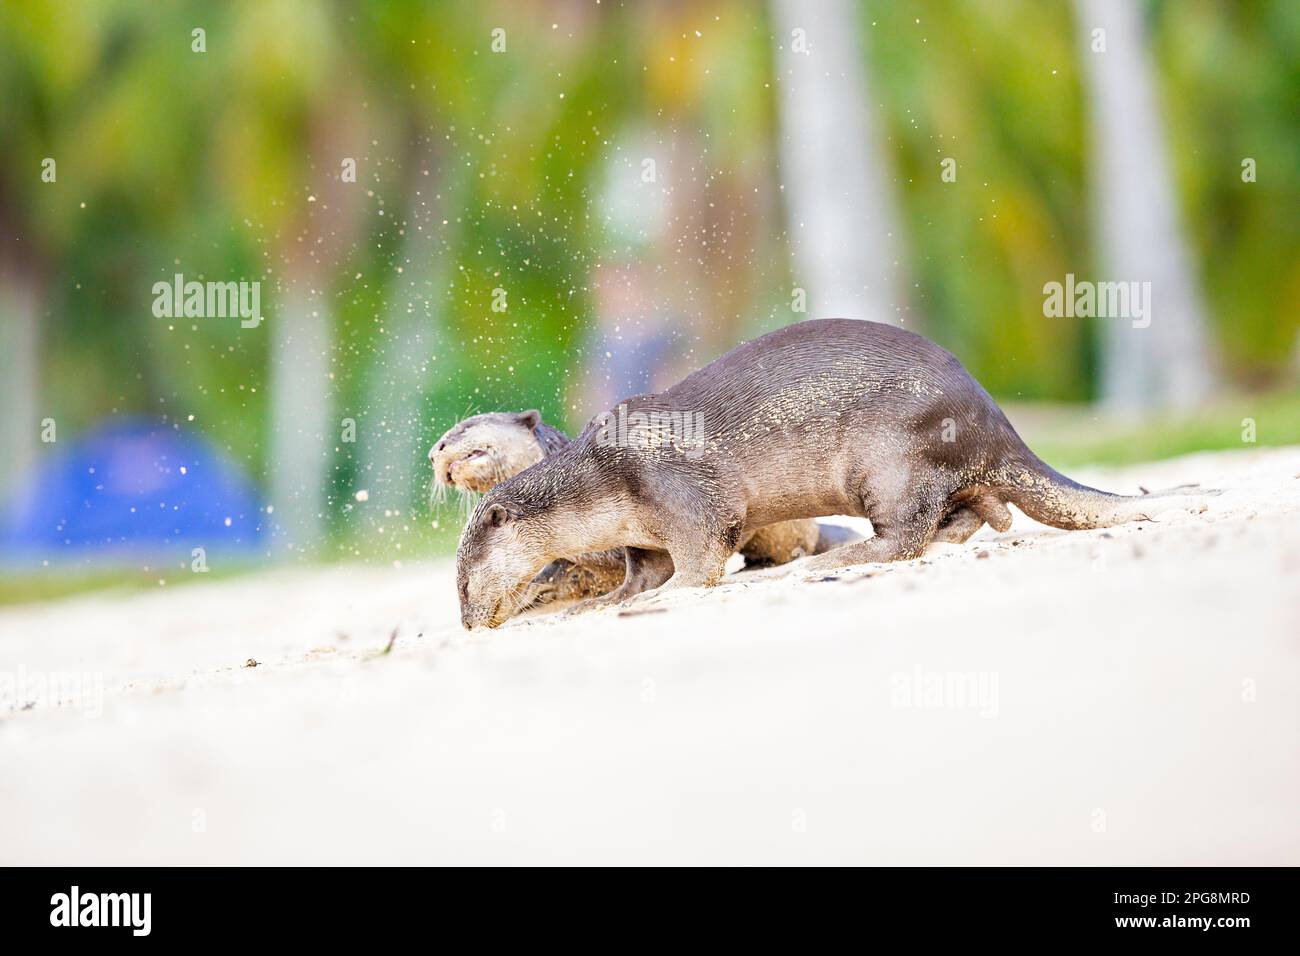 Un paio di lontre lisce-rivestito che controlla il profumo lasciato nella sabbia di una spiaggia come parte del comportamento territoriale, Singapore. Foto Stock